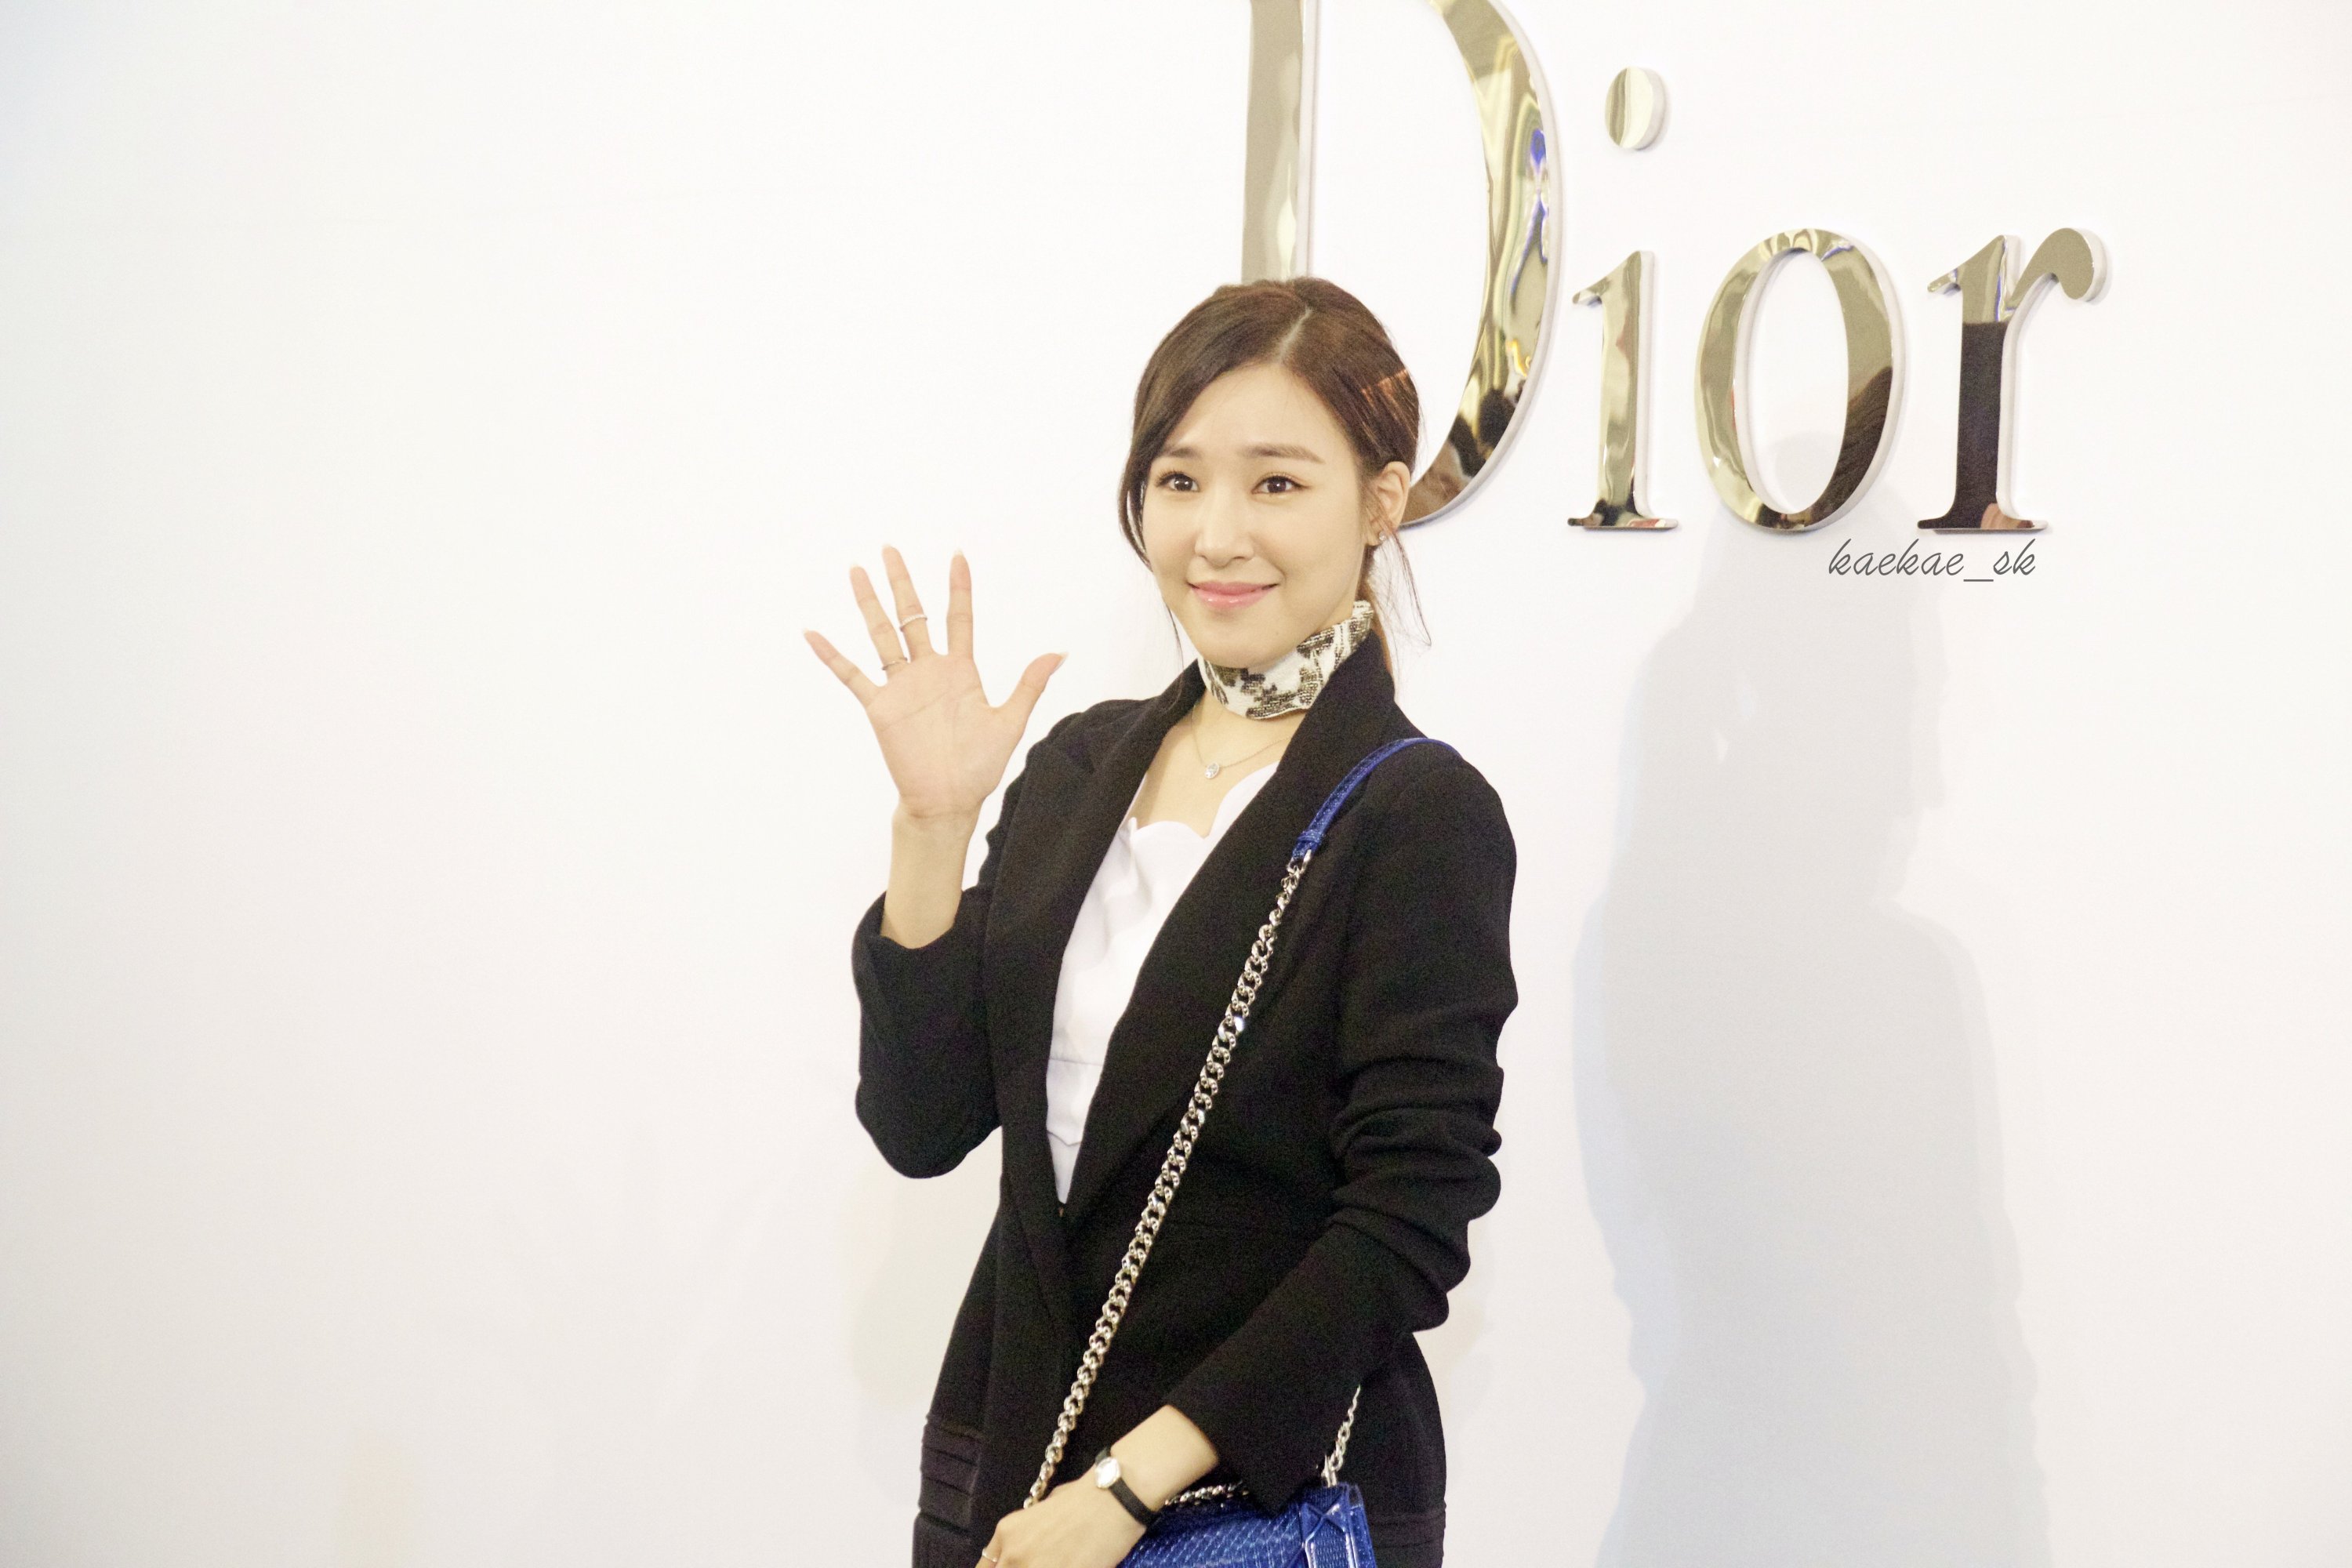 [PIC][17-02-2016]Tiffany khởi hành đi Thái Lan để tham dự sự kiện khai trương chi nhánh của thương hiệu "Christian Dior" vào hôm nay - Page 8 3qpw4Mi9s3-3000x3000